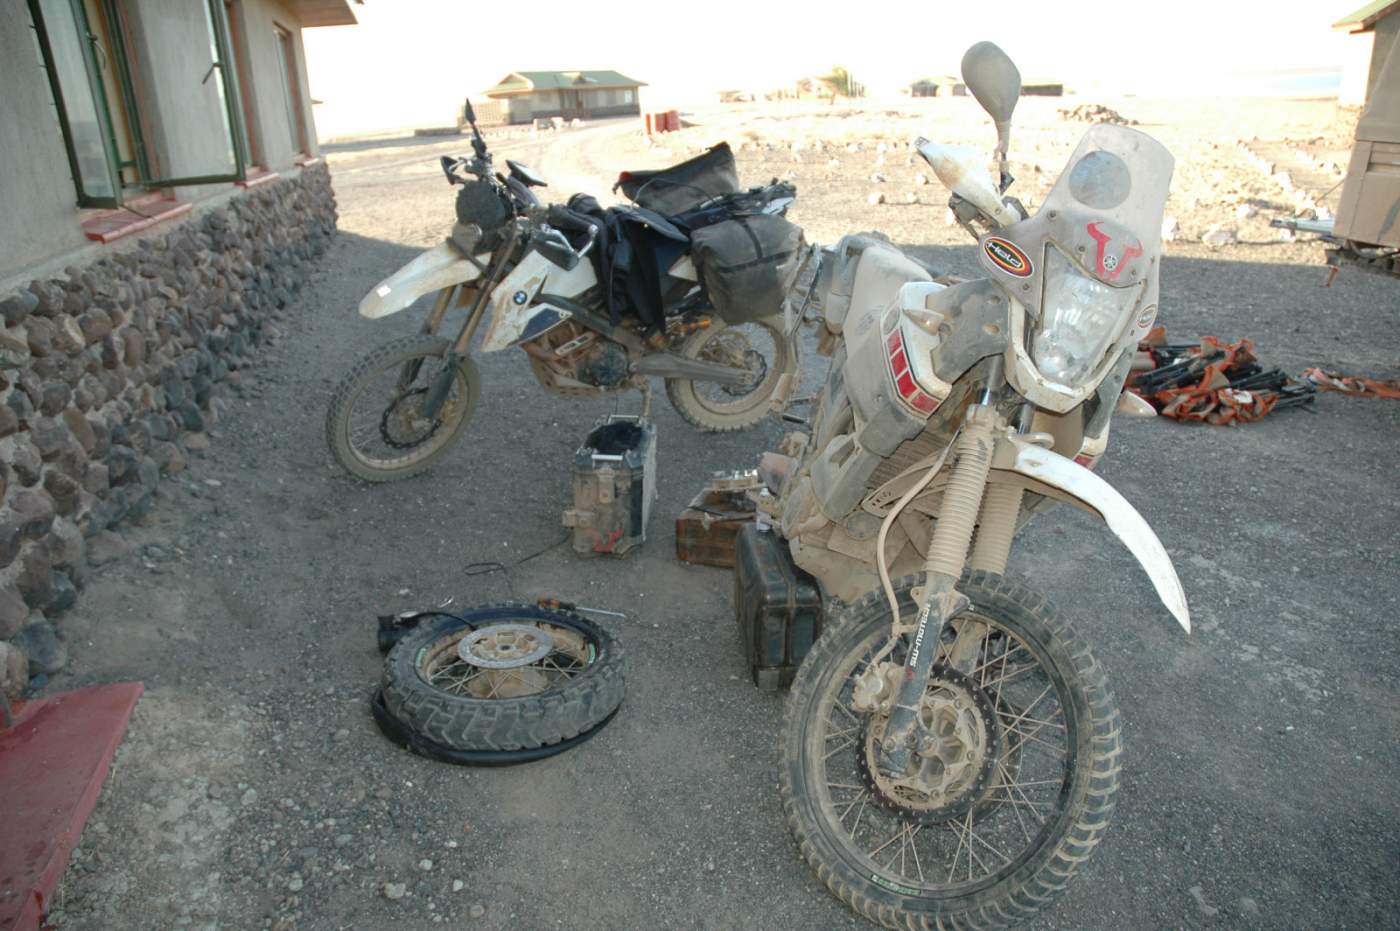 Reparatur eines Motorrades während unserer Motorradreise durch den afrikanischen Kontinent